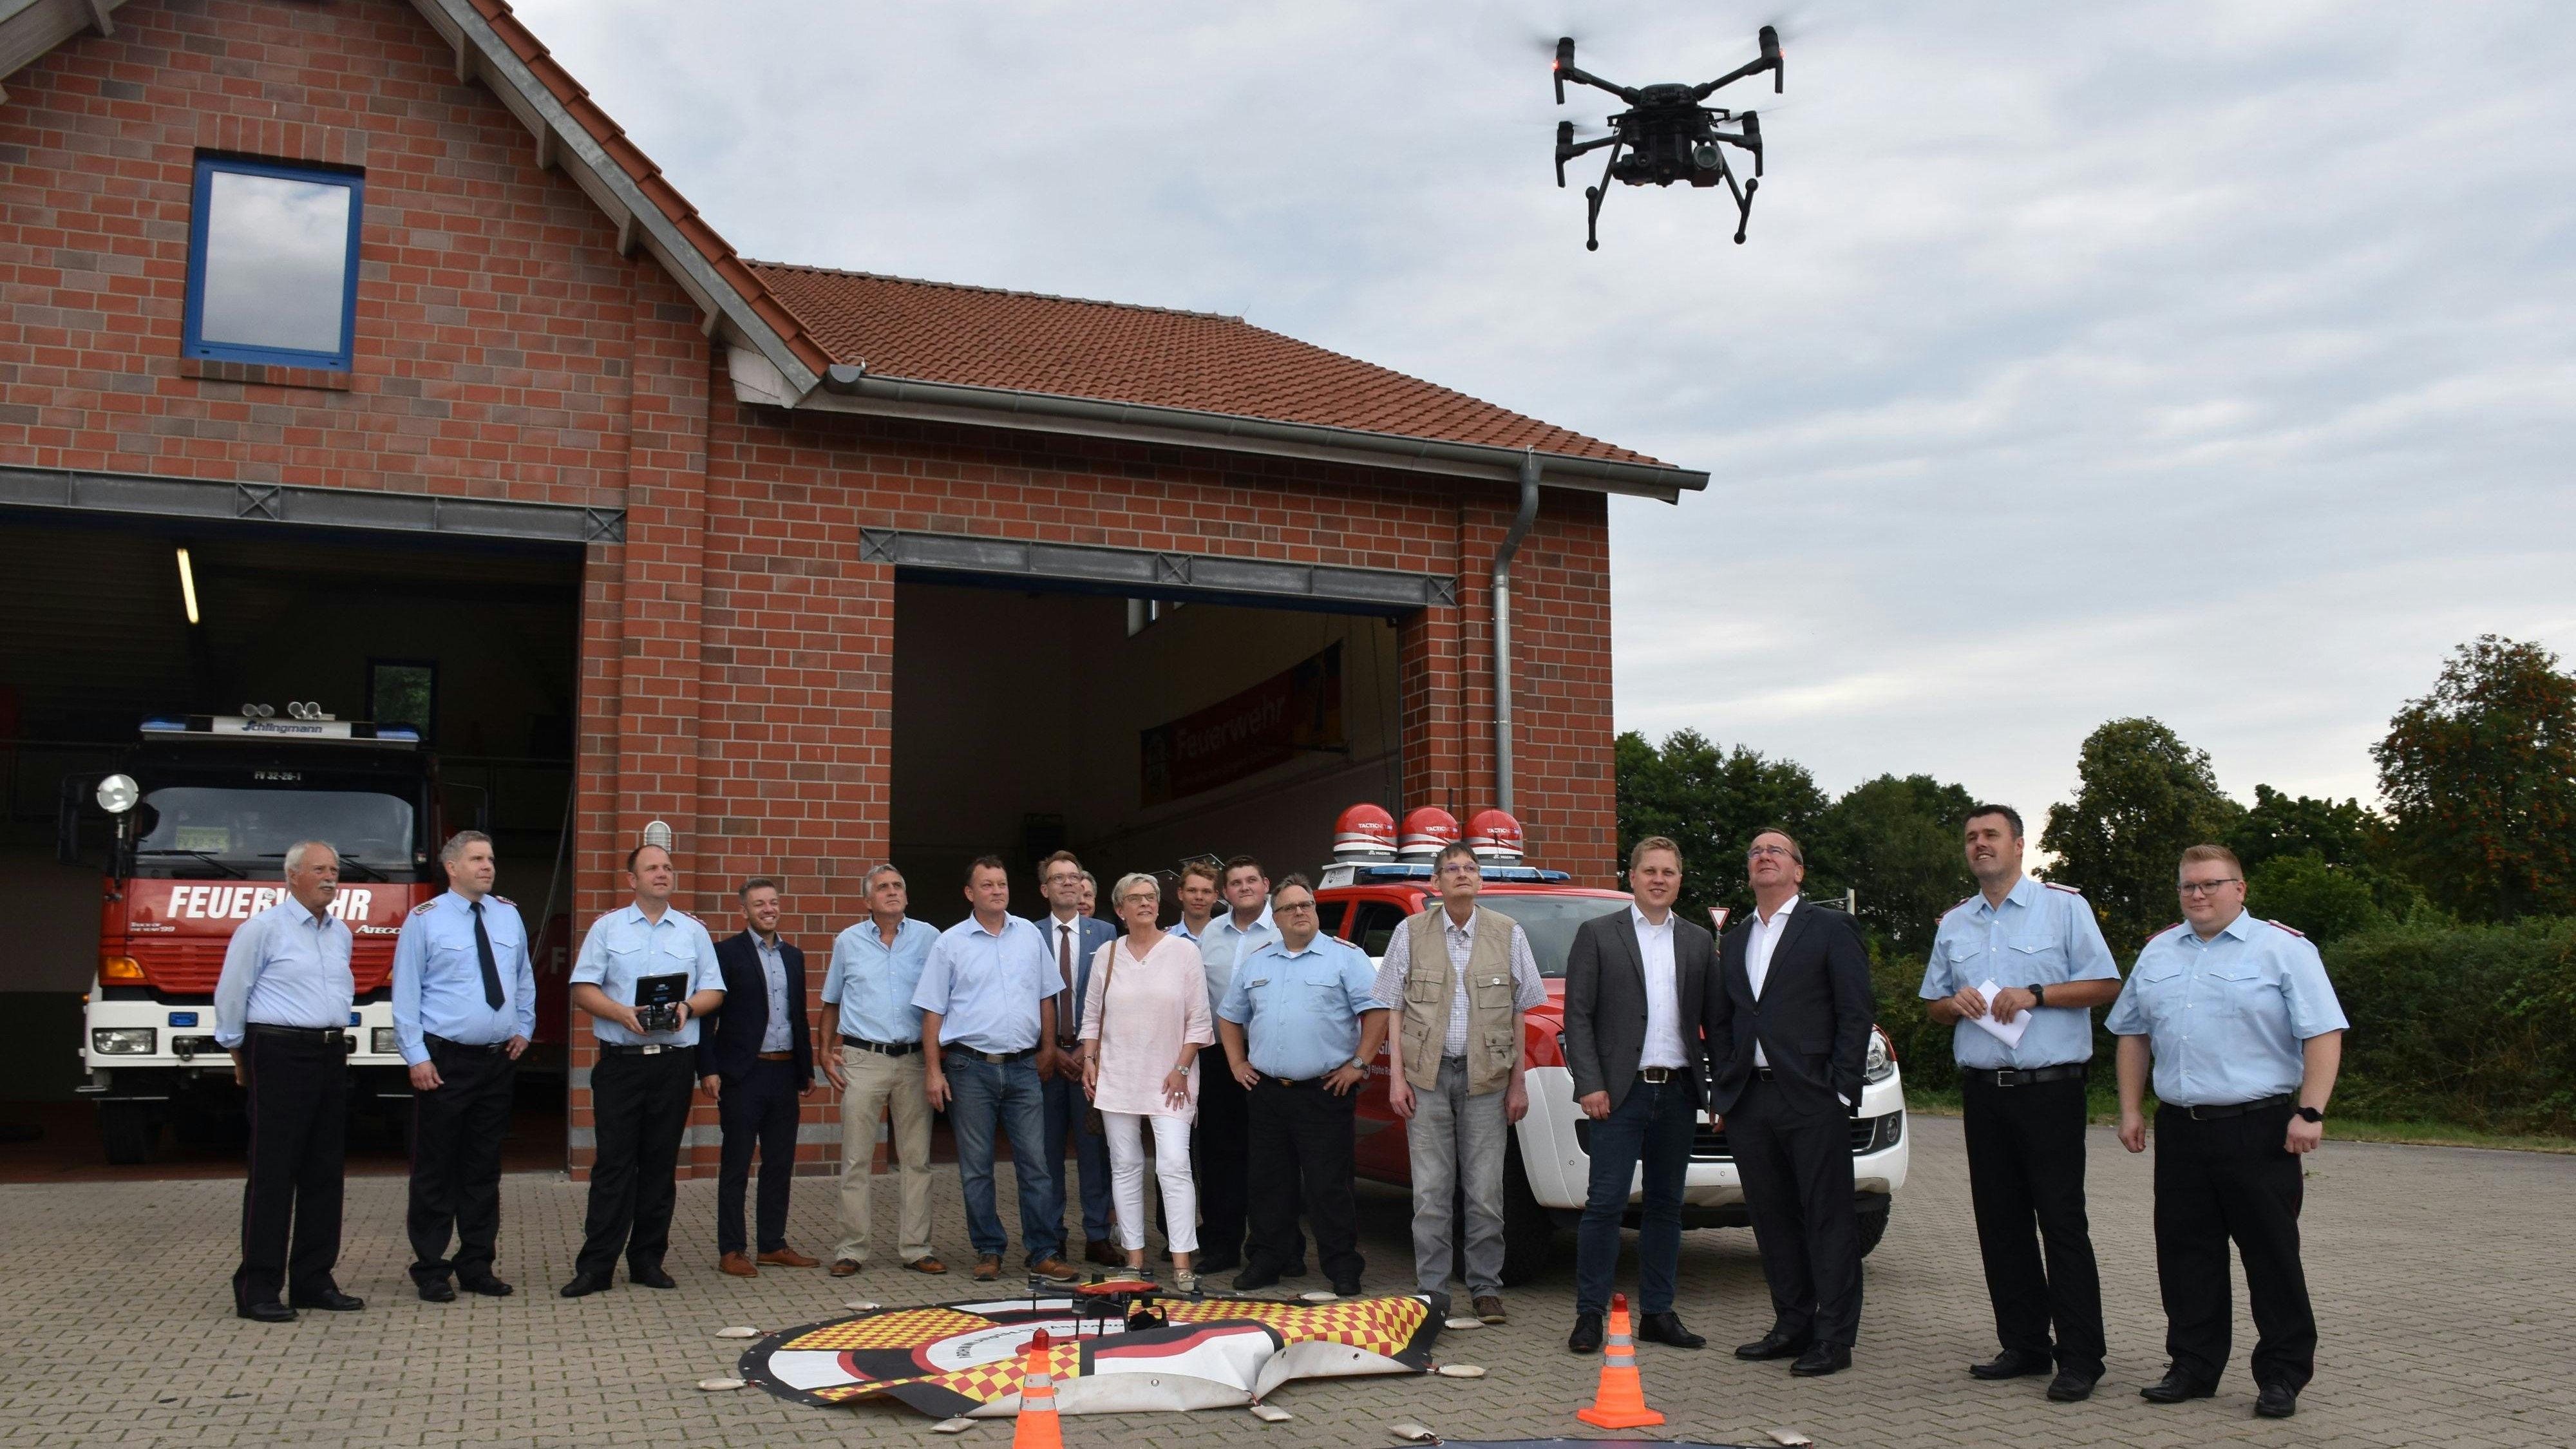 Fliegender Helfer: Beim Besuch von Boris Pistorius, Minister für Inneres und Sport, lässt die Feuerwehr Steinfeld während einer Vorführung eine Drohne aufsteigen. Foto: Timphaus